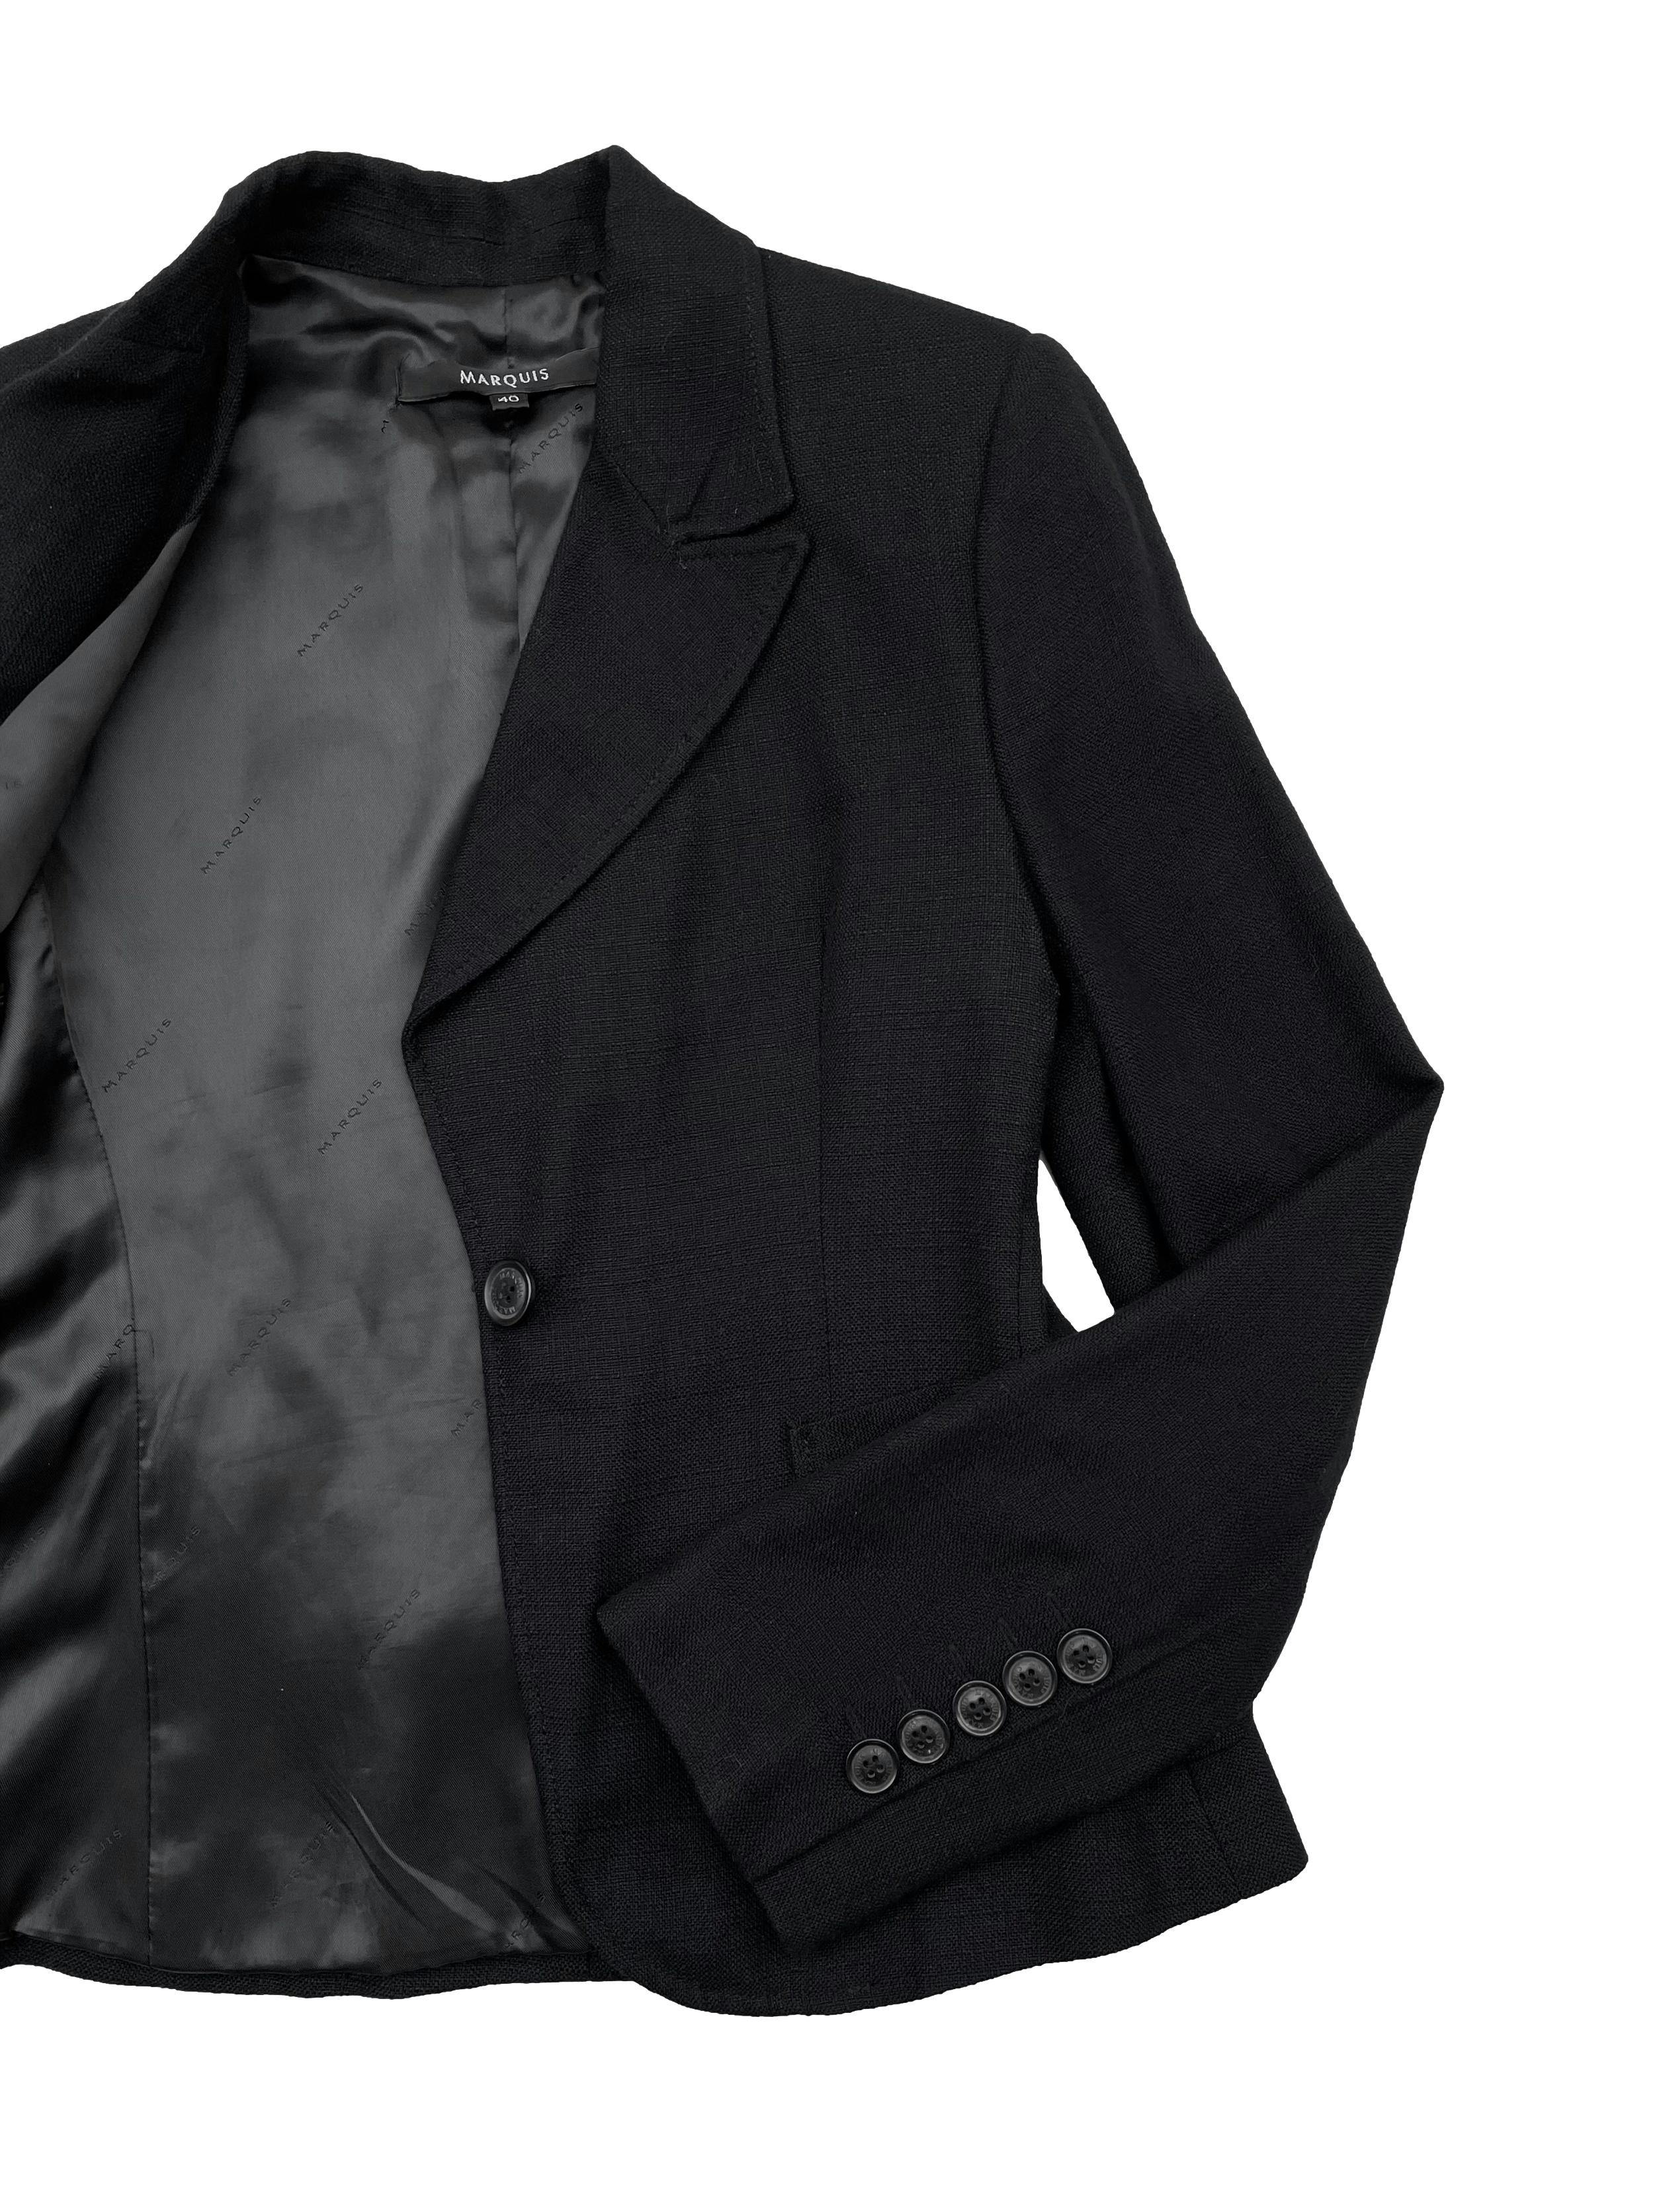 Saco blazer negro Marquis, con hombreras y bolsillos delanteros, forrado. Busto 88cm, Largo 58cm. 